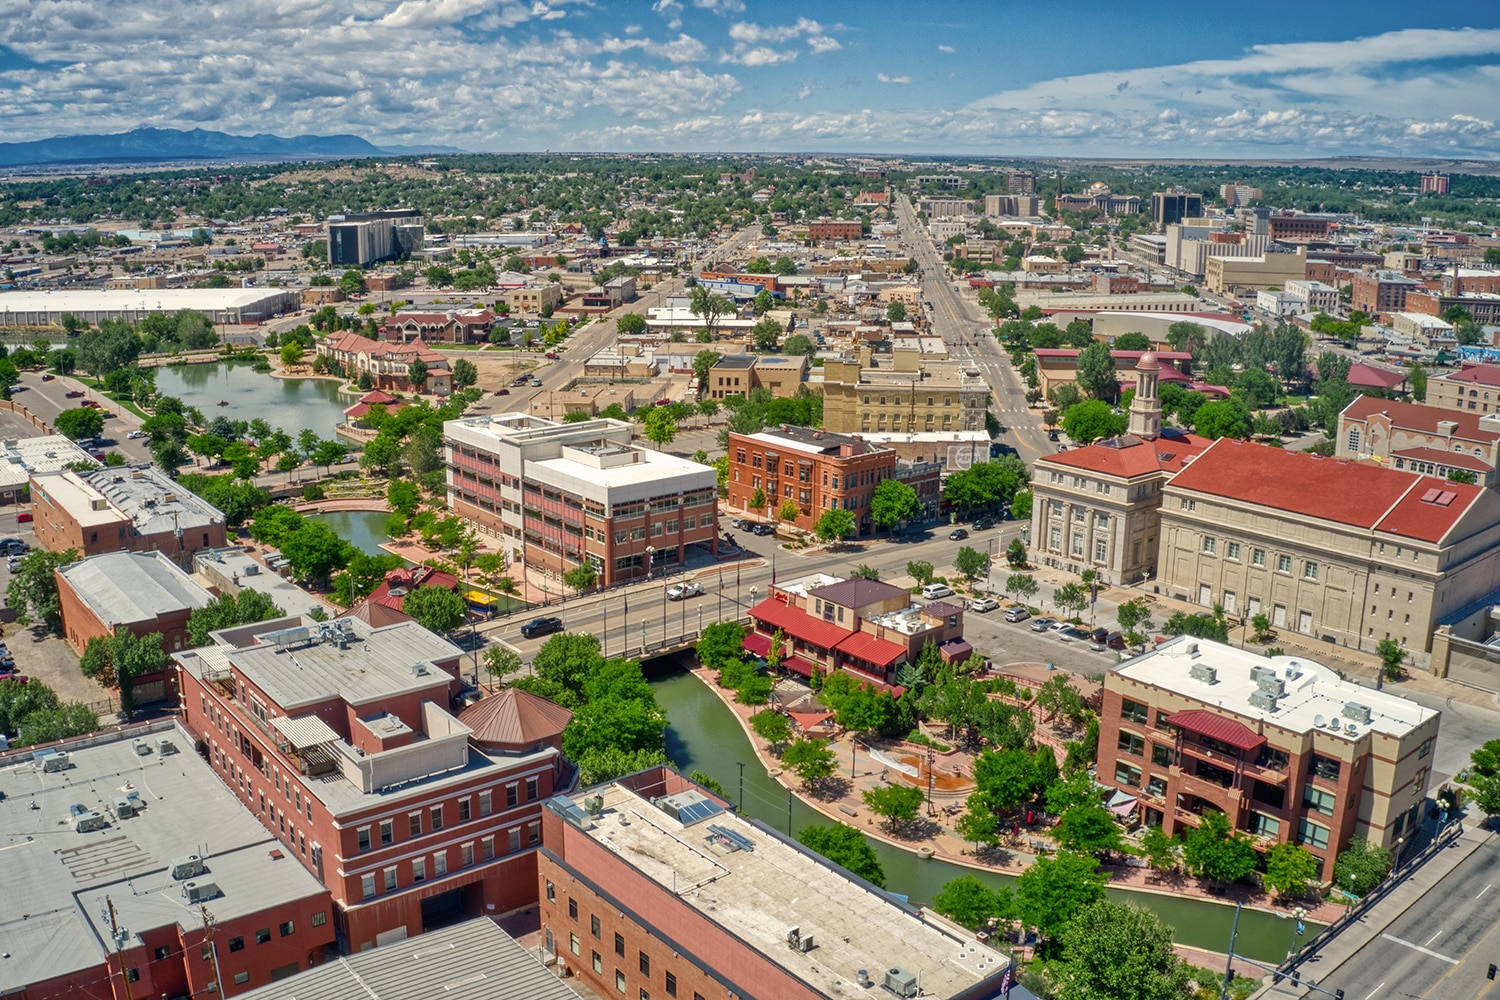 Downtown Pueblo, Colorado during Summer